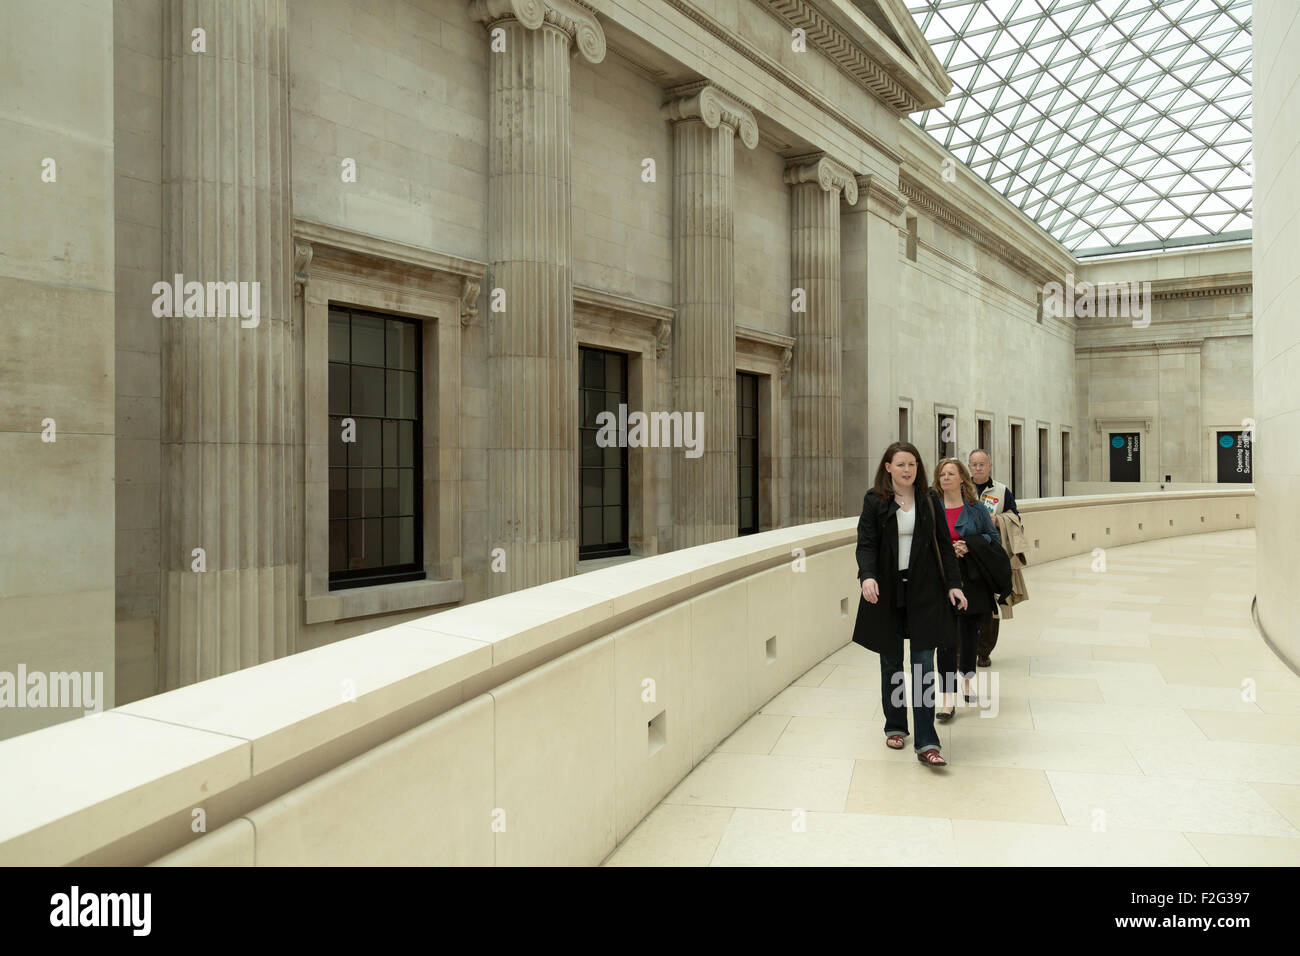 05.06.2012, London, größere London, United Kingdom - das British Museum, eines der Top-Sehenswürdigkeiten der Stadt. Als die Stockfoto